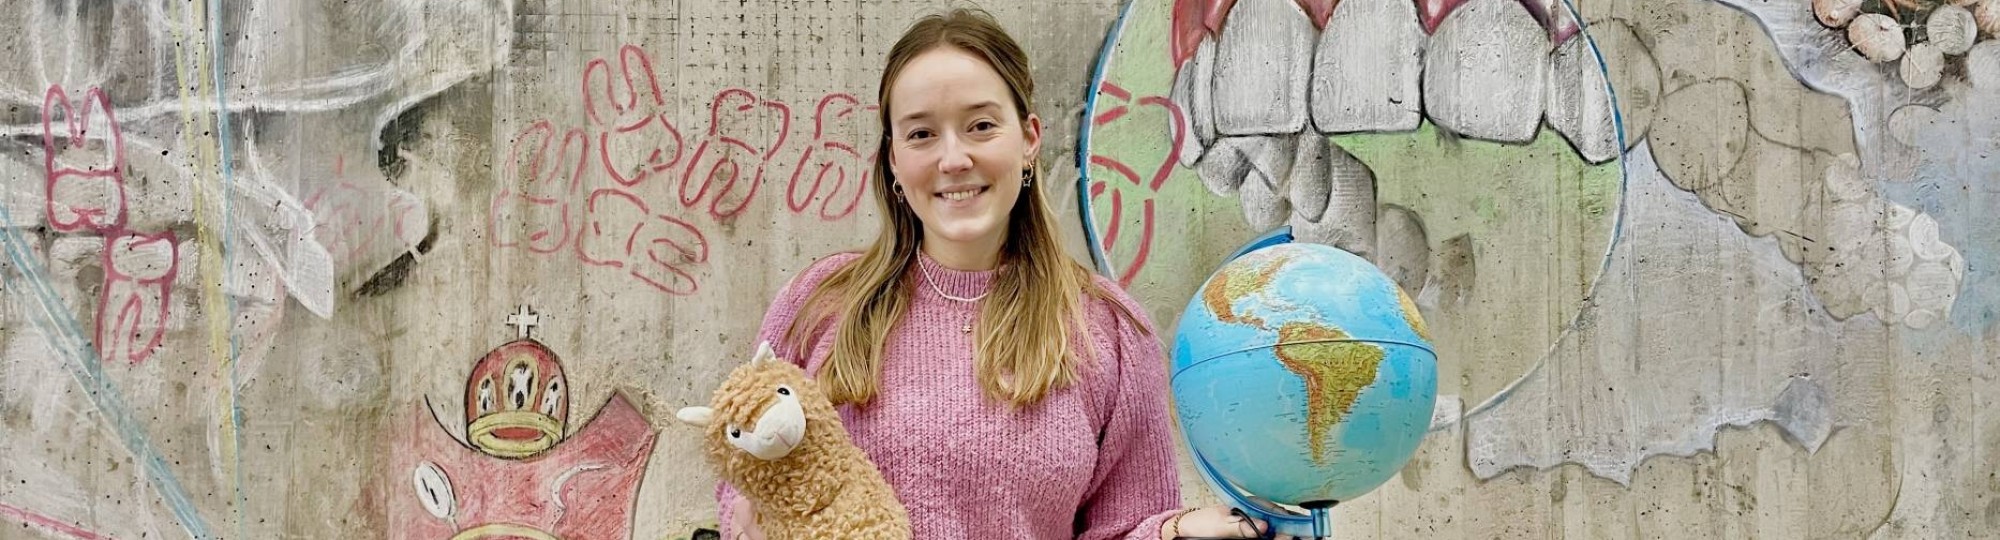 0602a952-0cff-11ee-8b0d-02565807075b Iris Klein. student Mondzorgkunde met een wereldbol en een knuffel van een lama in haar hand. 